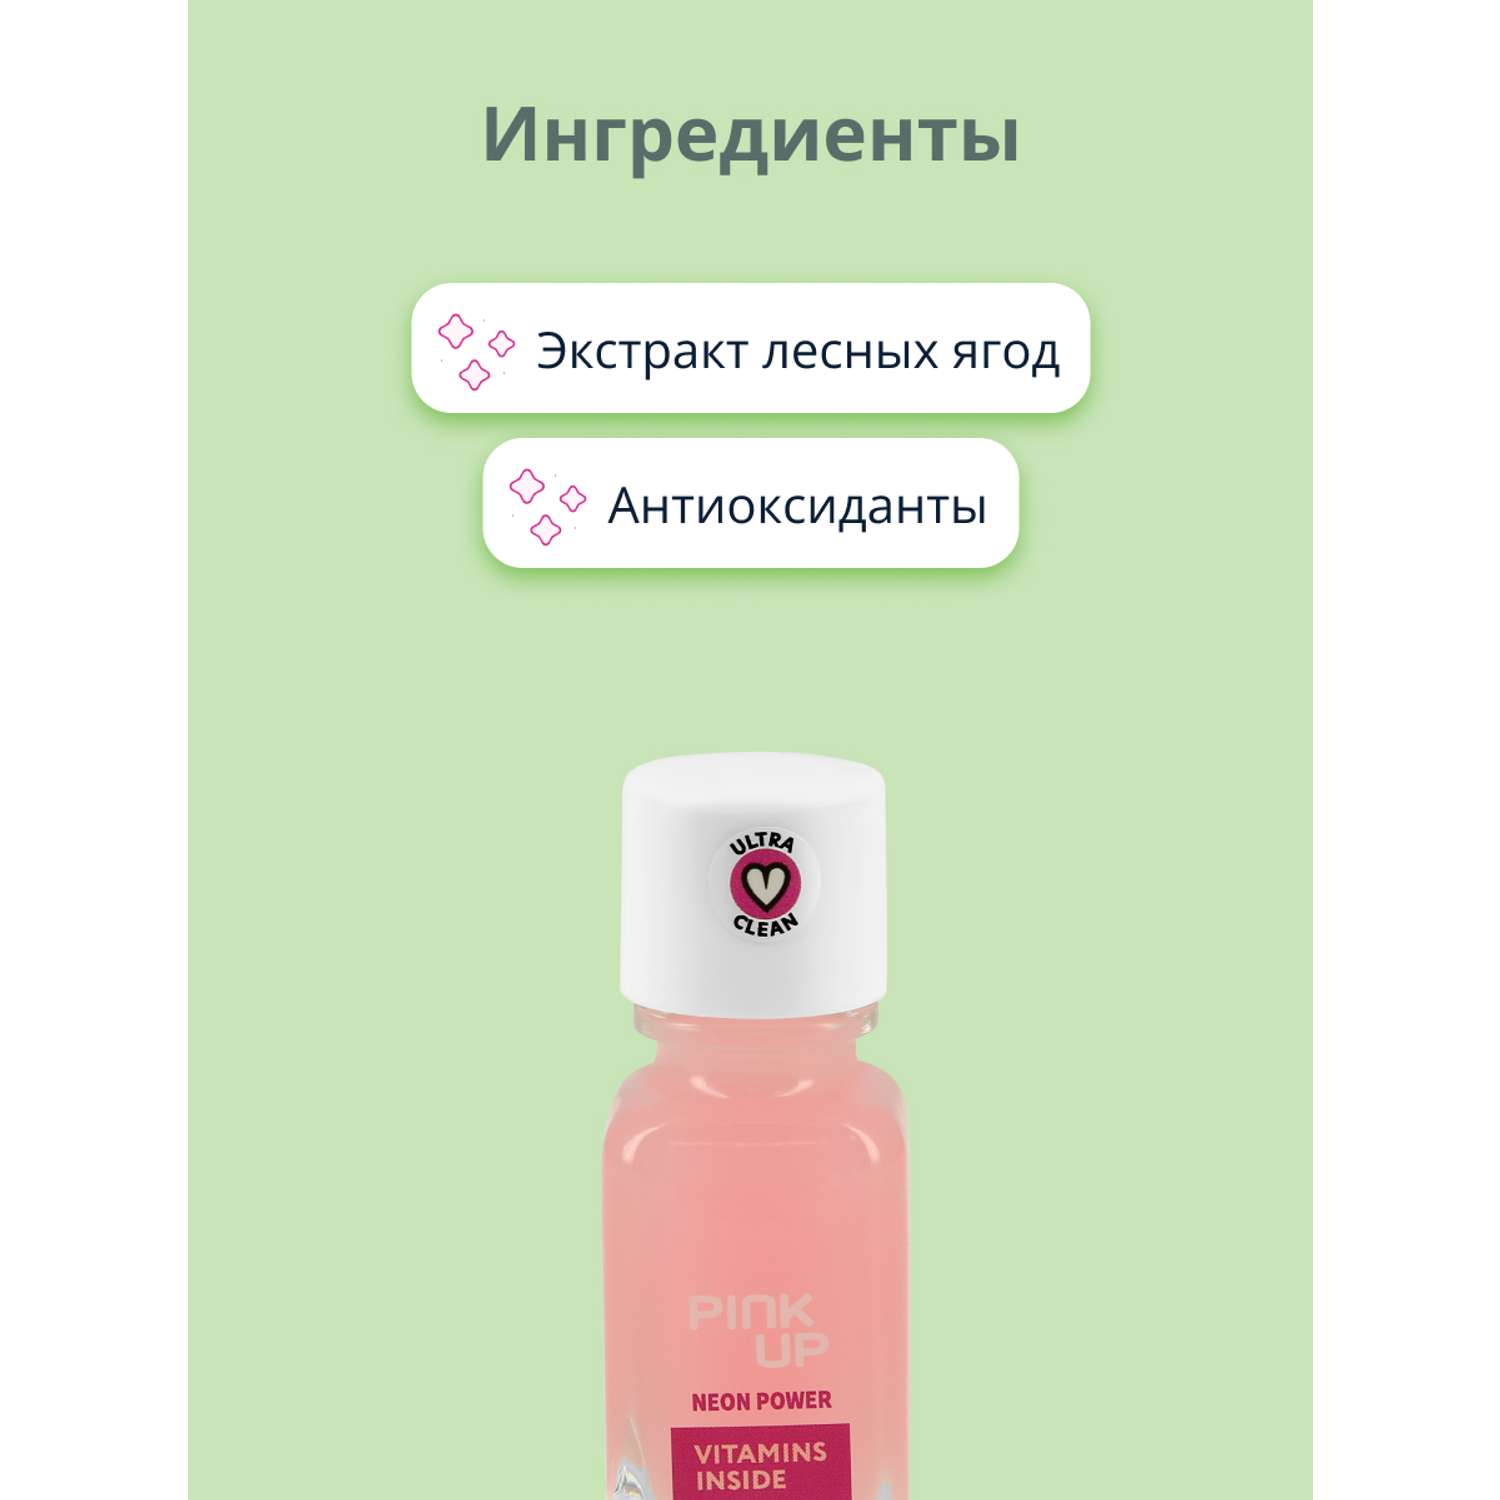 Средство для укрепления ногтей Pink Up Neon power с антиоксидантами и экстрактом лесных ягод 11 мл - фото 2